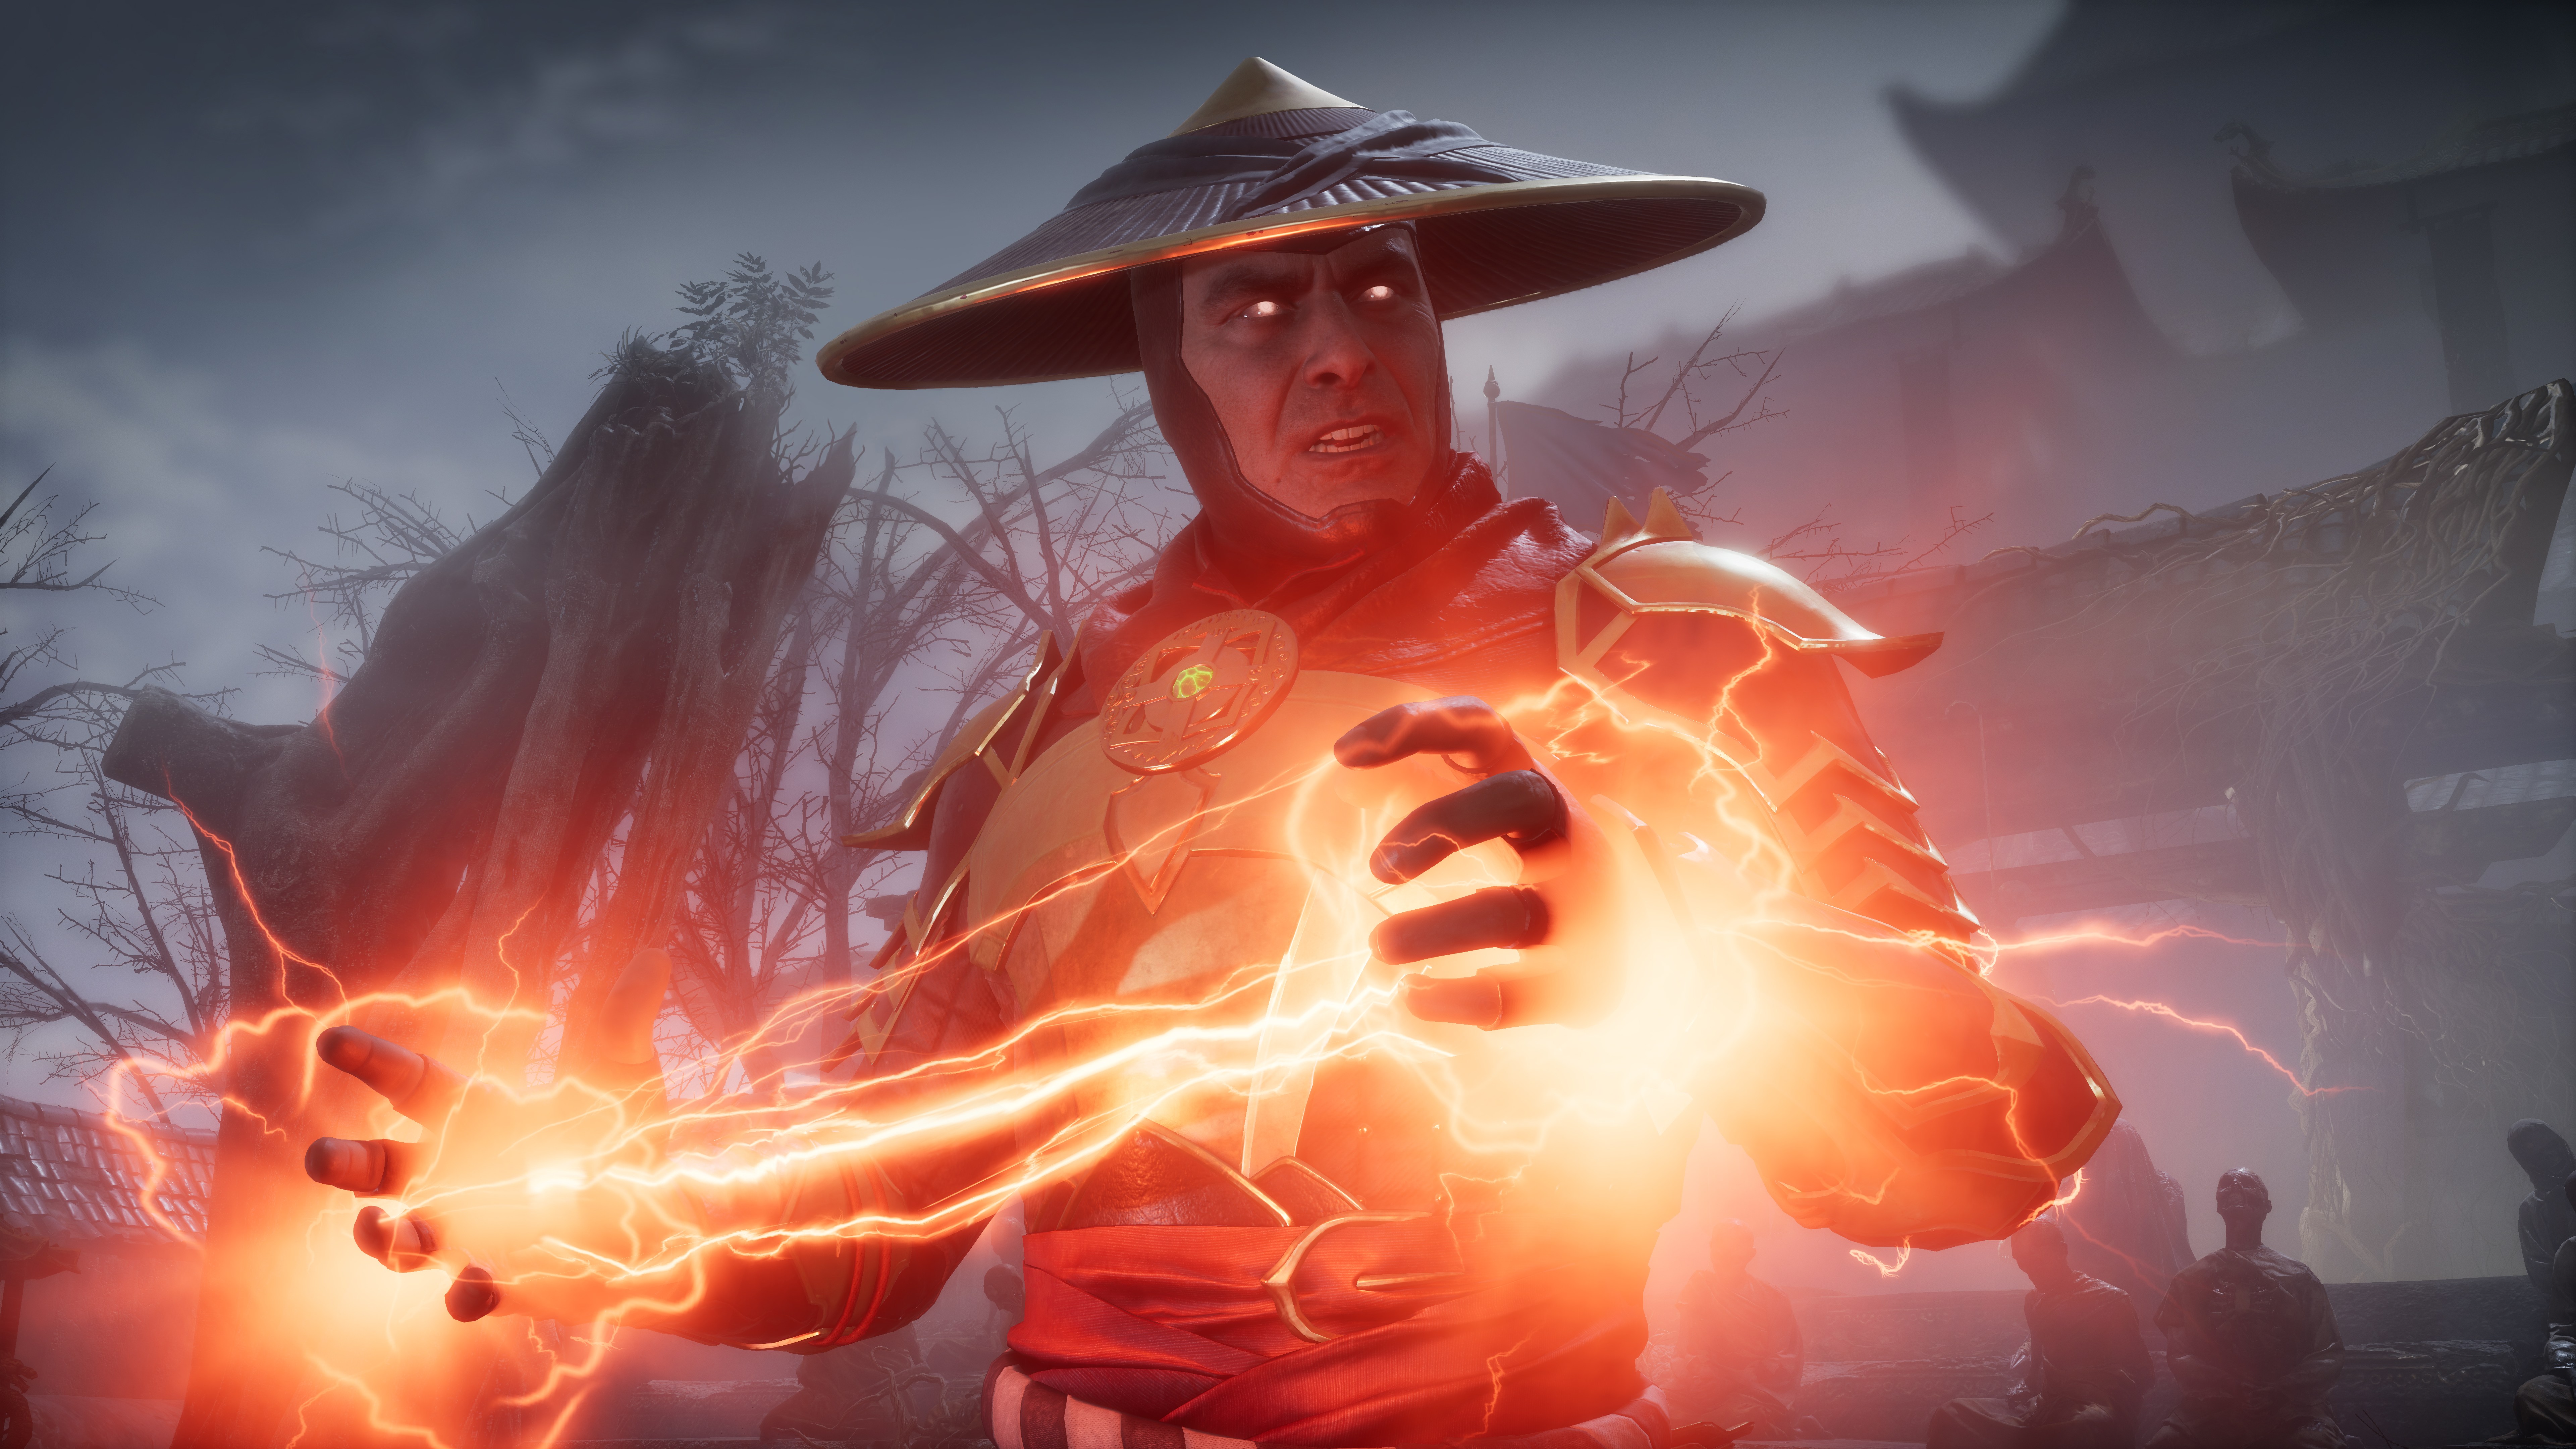 Mortal Kombat 11 wallpaper - Raiden and Lightning